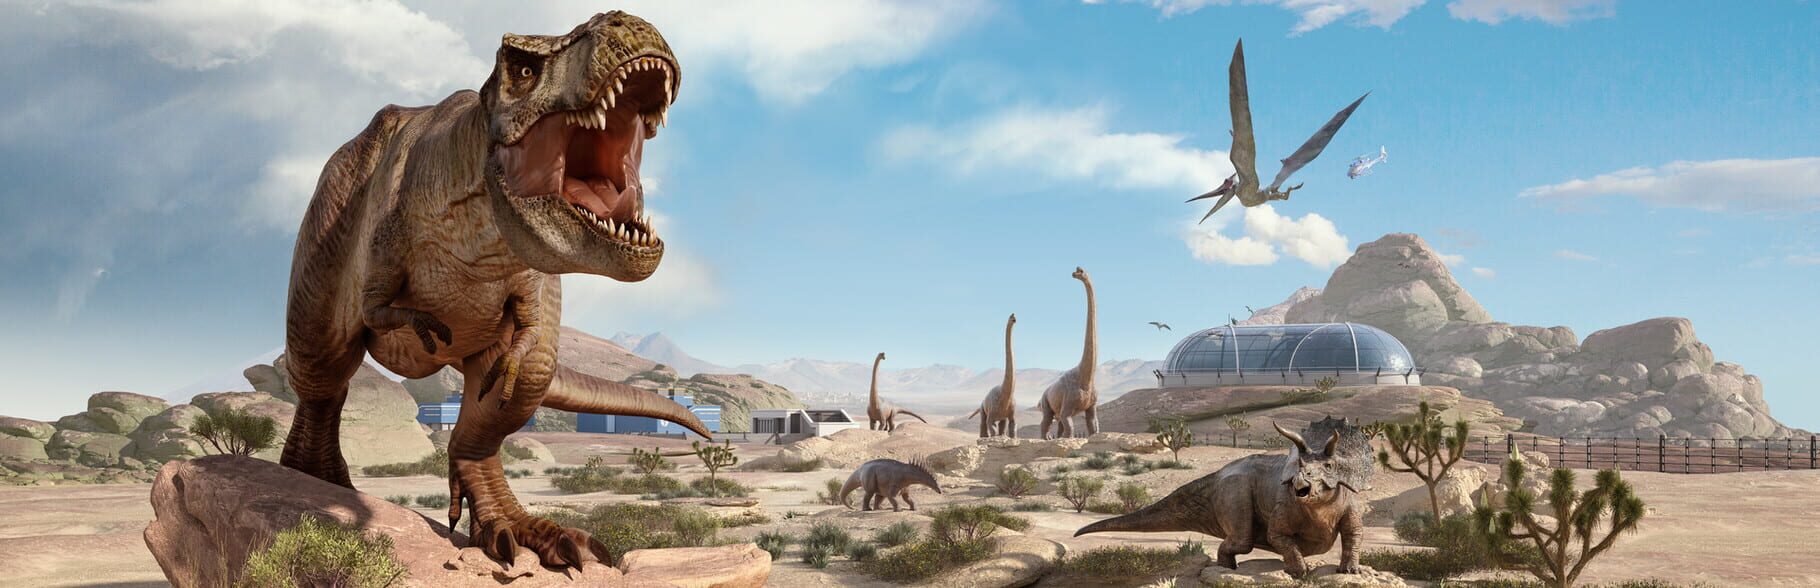 Artwork for Jurassic World Evolution 2